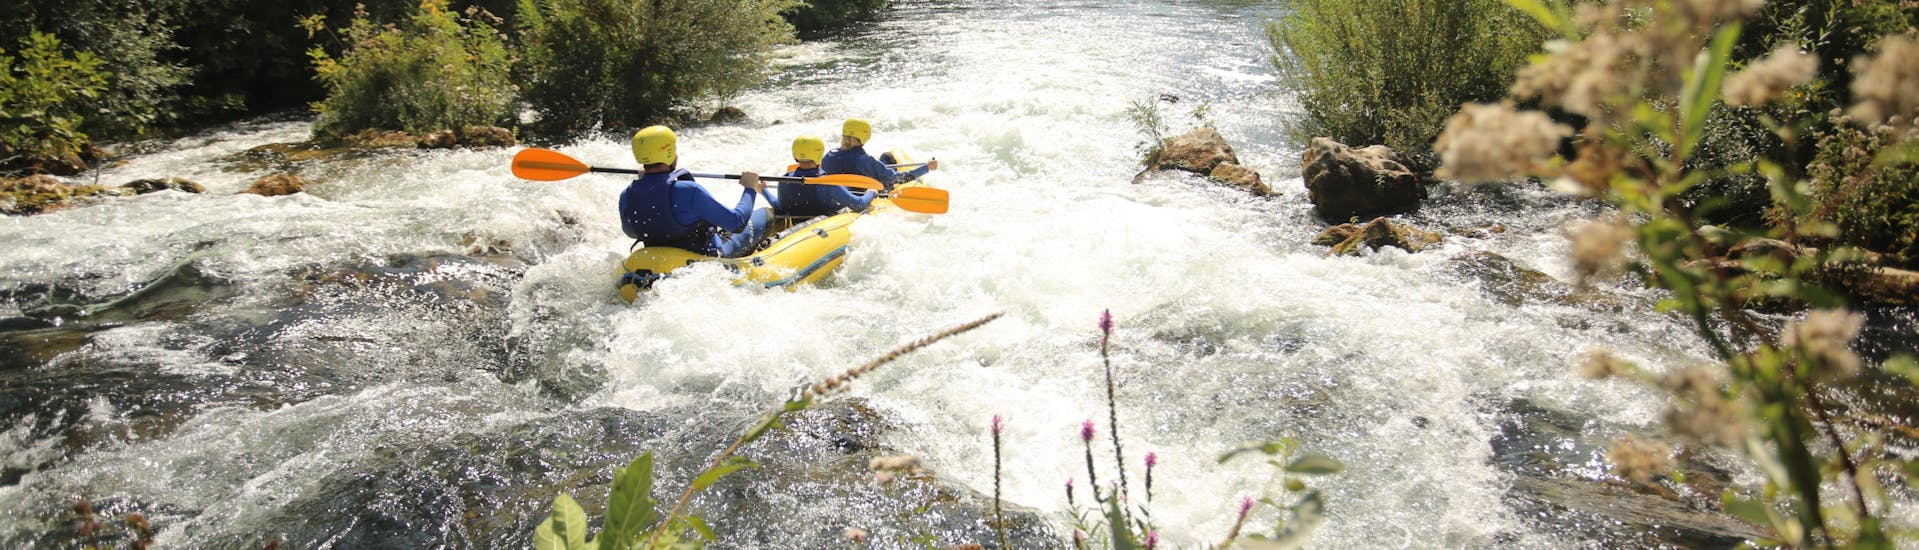 Een groep mensen peddelt over een van de onstuimige stroomversnellingen tijdens het raften op de Cetina-rivier met Active 365.